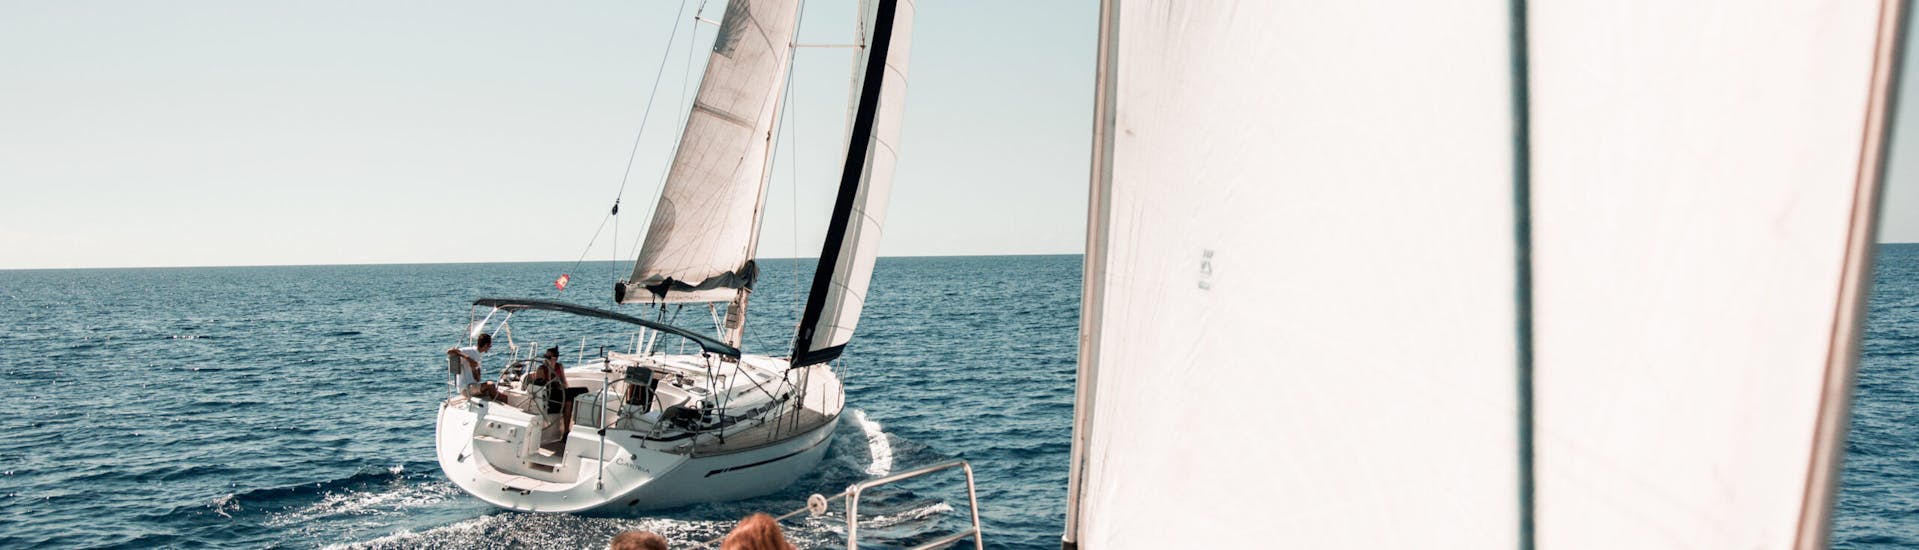 Gita in barca a vela da Portocolom a Cala Ferrera al tramonto.